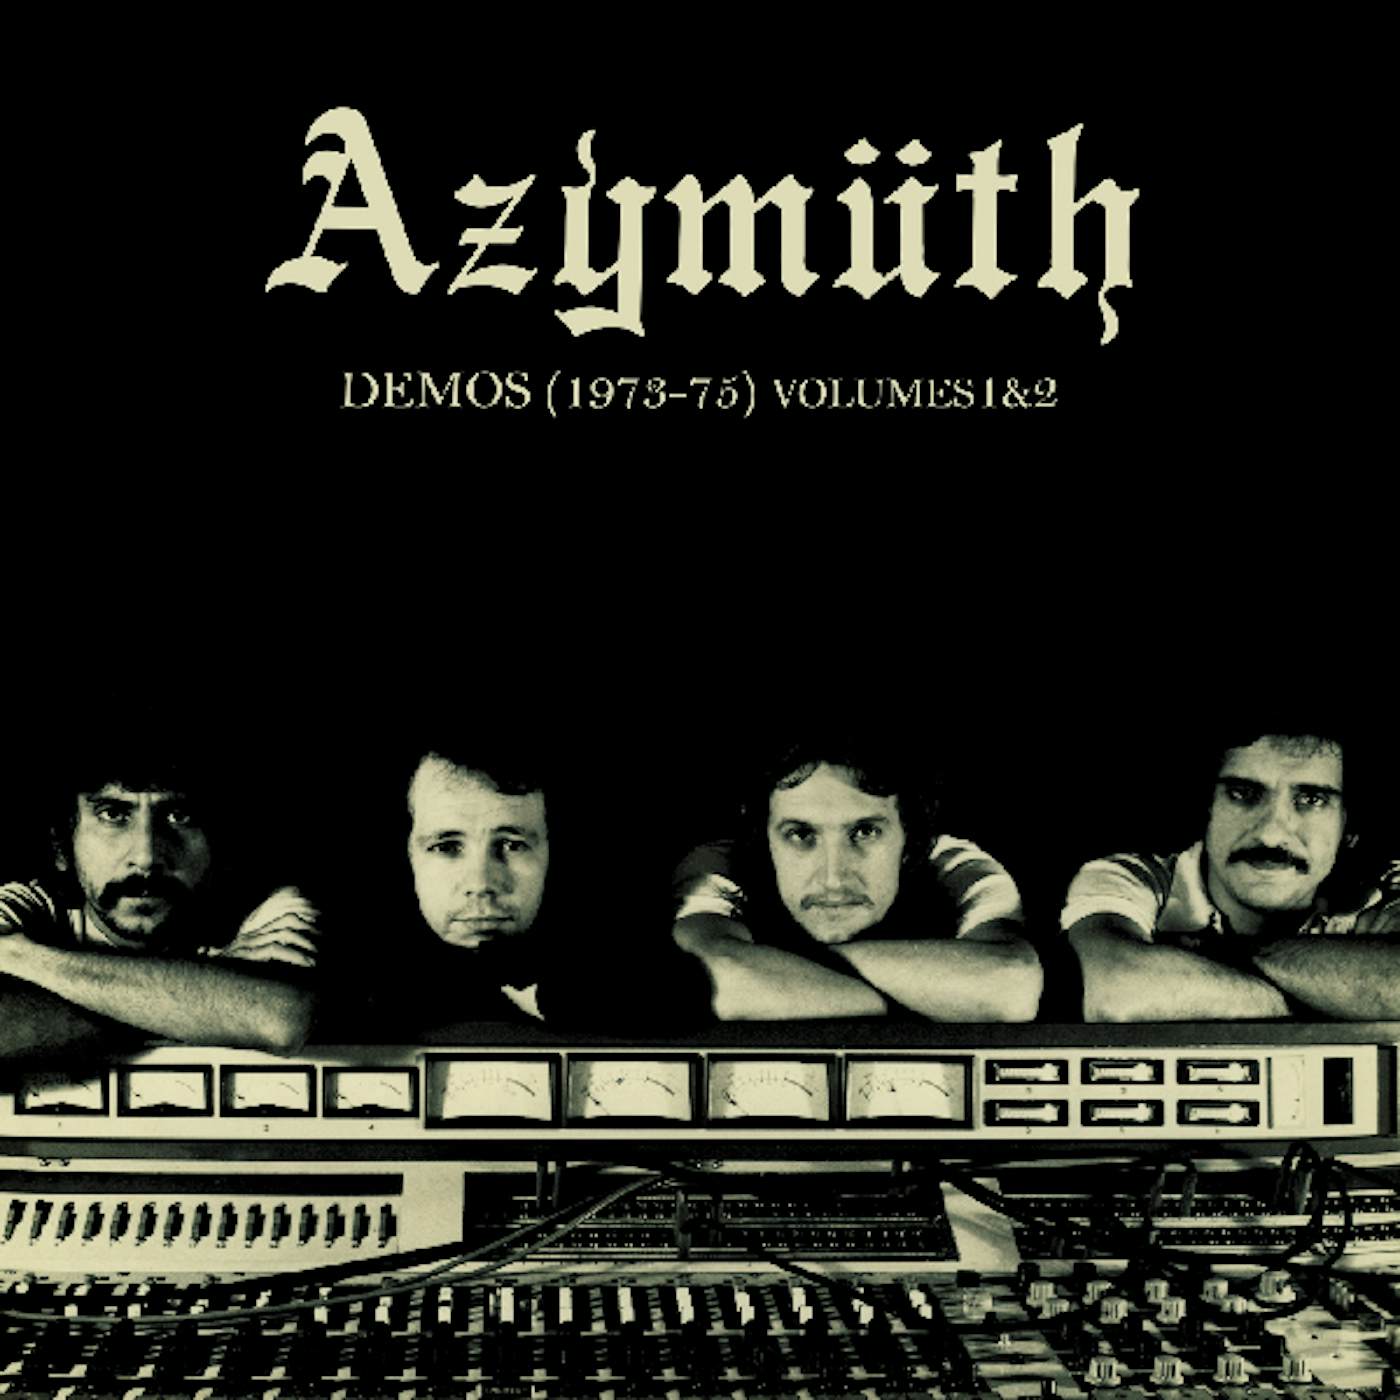 Azymuth DEMOS (1973-75) 1 & 2 CD